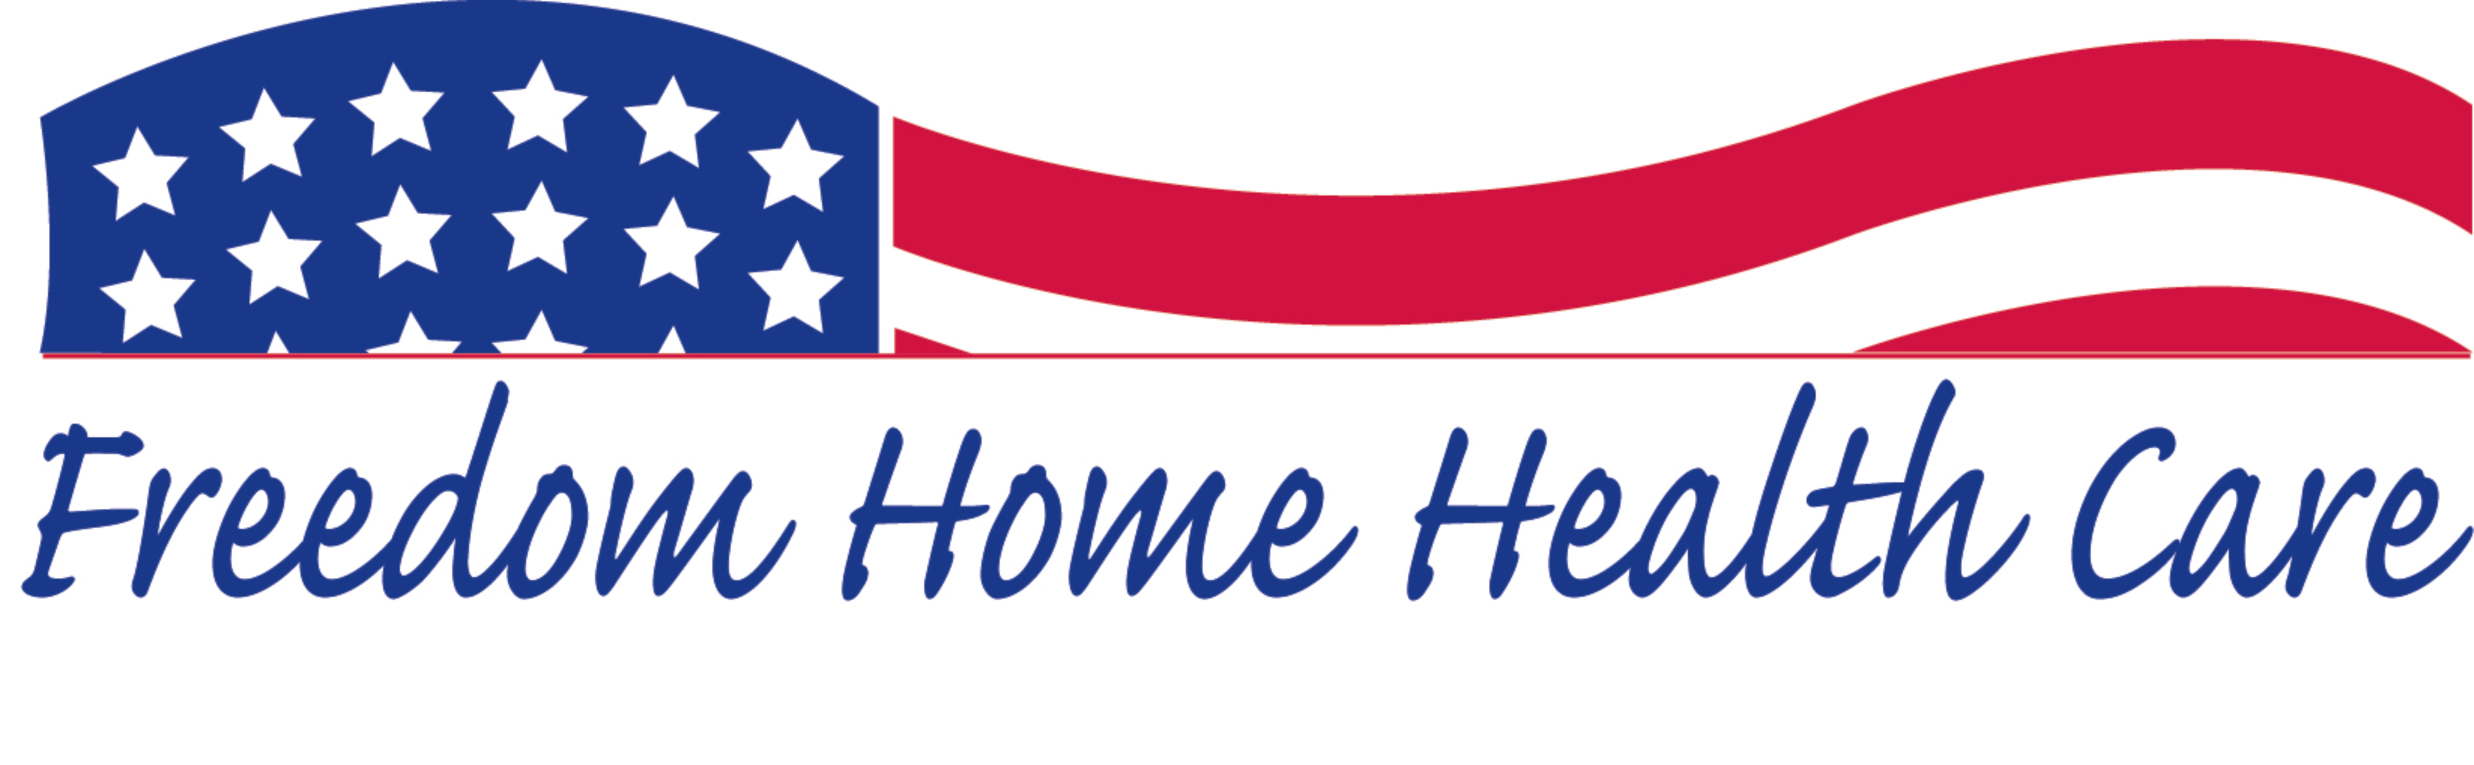 Freedom home care Idea